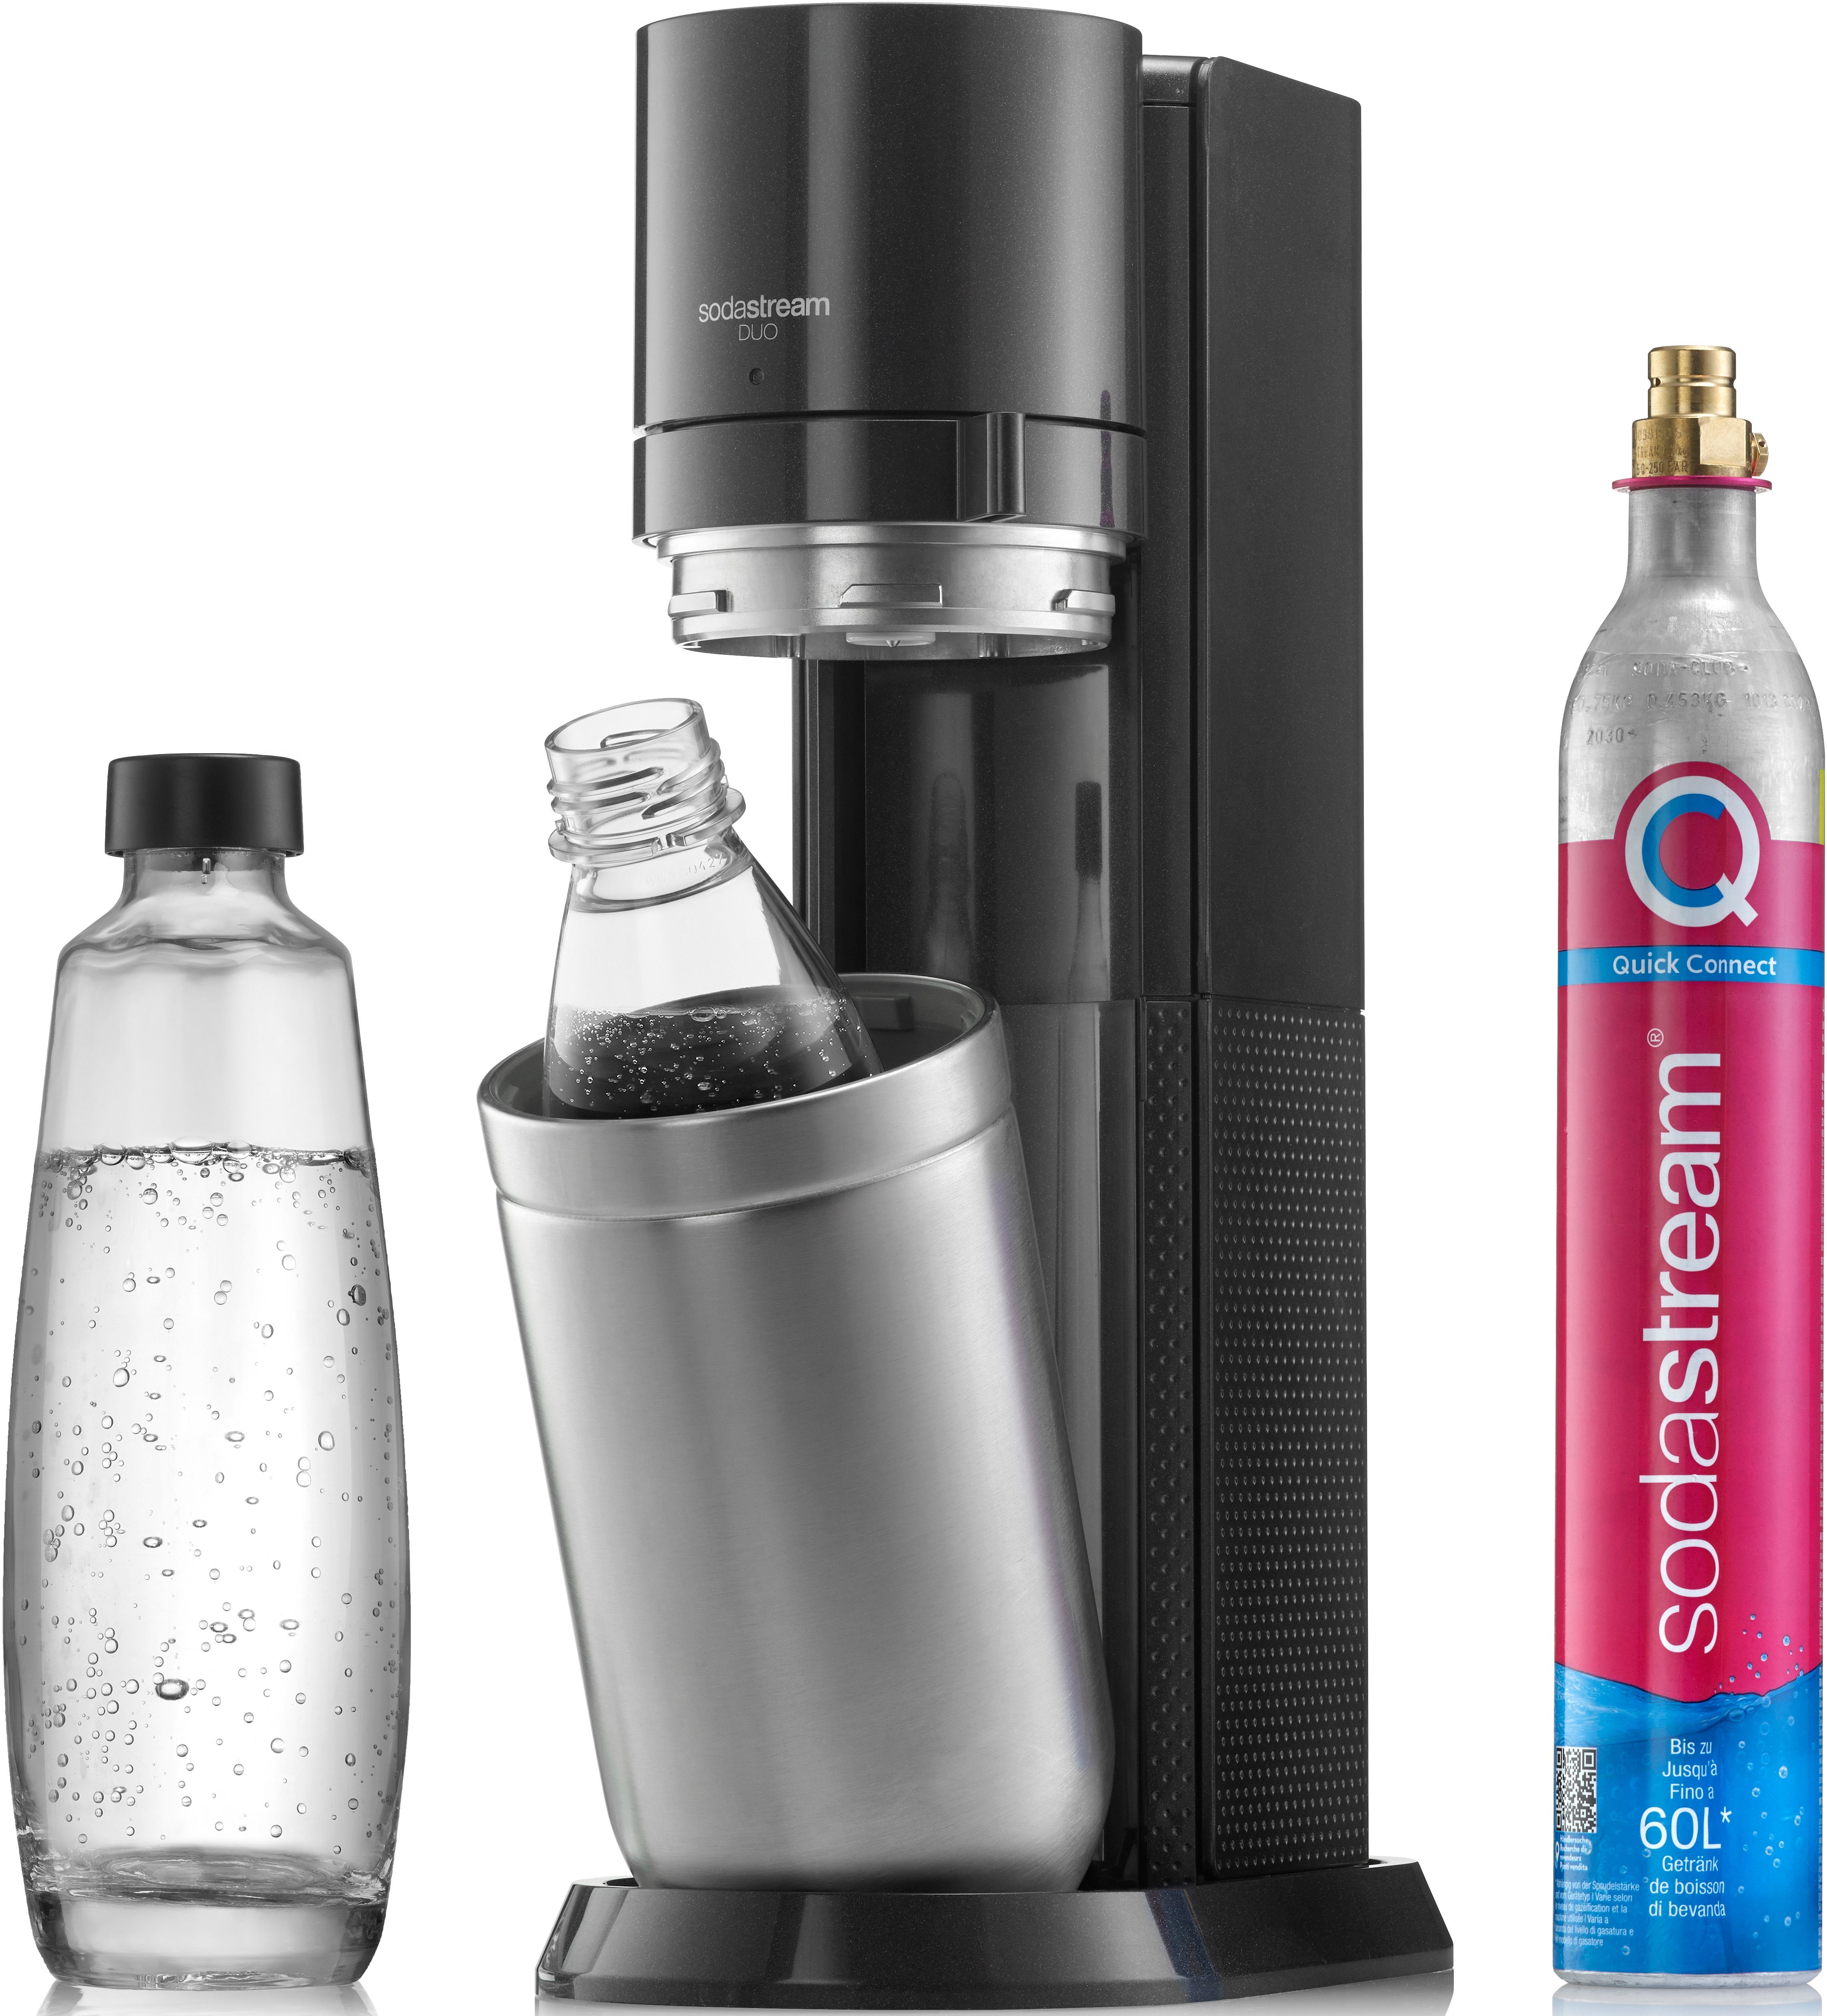 1L Wassersprudler 4-tlg), schwarz DUO, (Set, spülmaschinenfeste Glasflasche, SodaStream Kunststoff-Flasche 1L CO2-Zylinder,